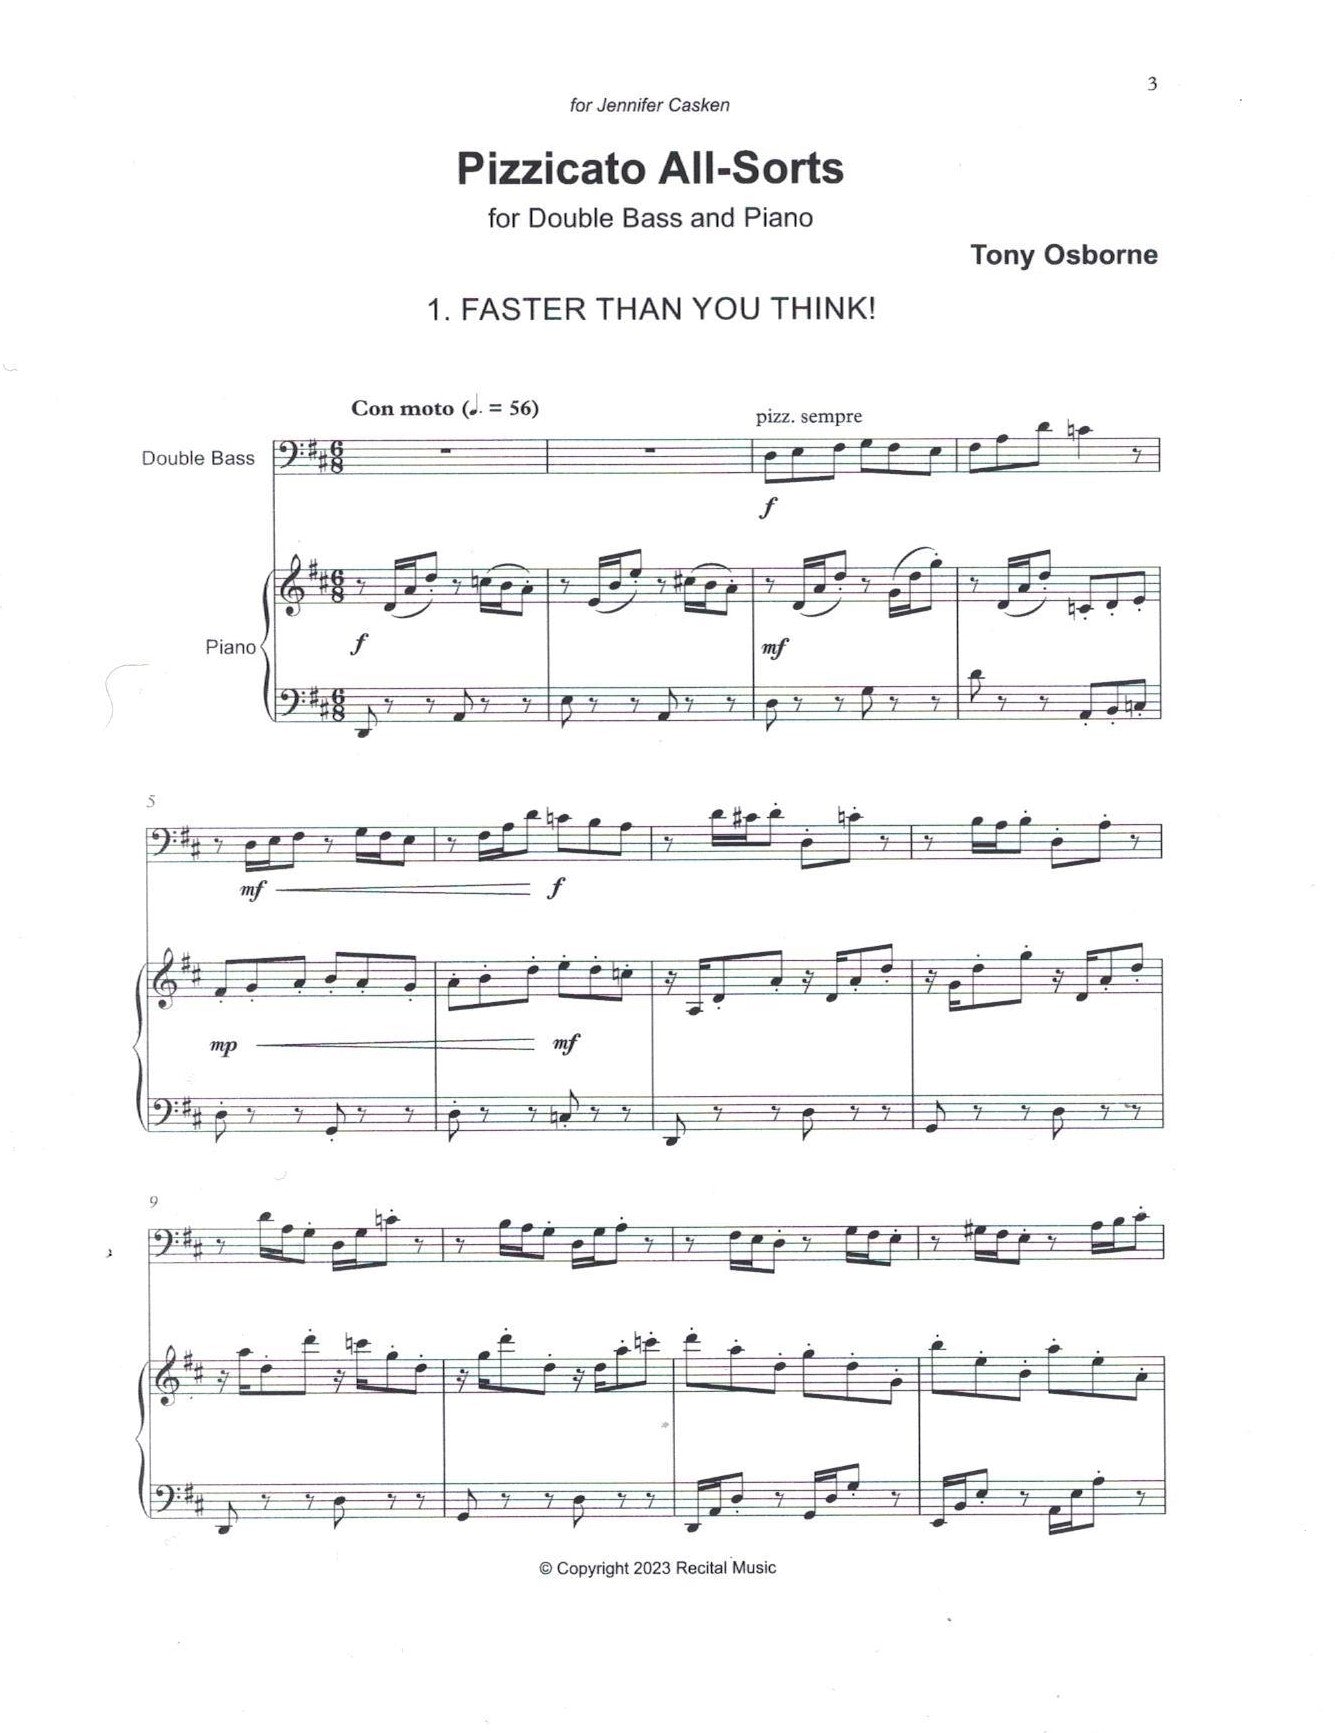 Tony Osborne: Pizzicato All-Sorts for double bass & piano